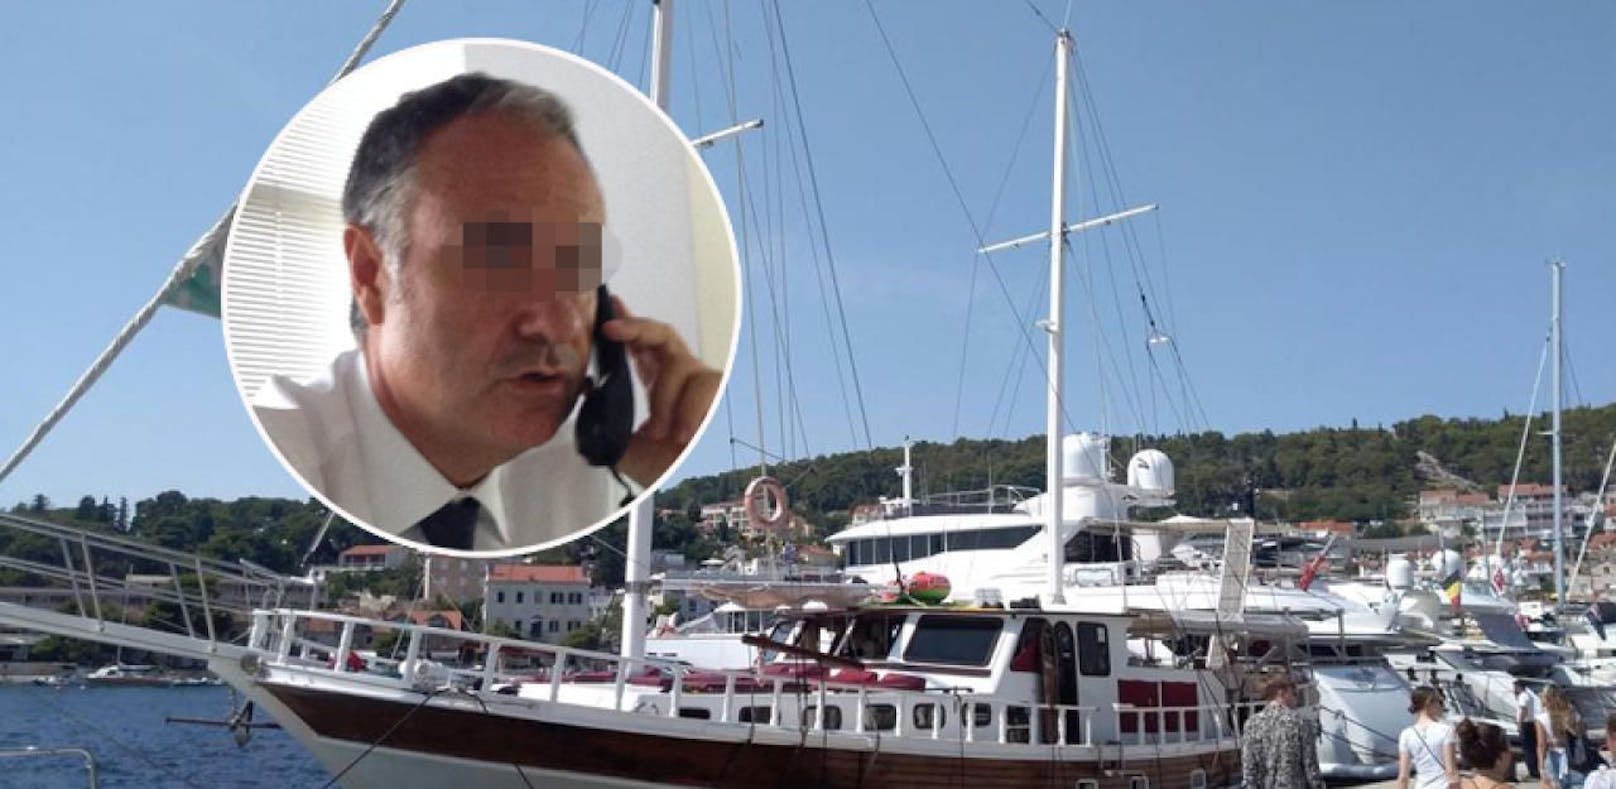 Der Manager Eugenio Vinci starb auf einer Luxus-Jacht in Kroatien.